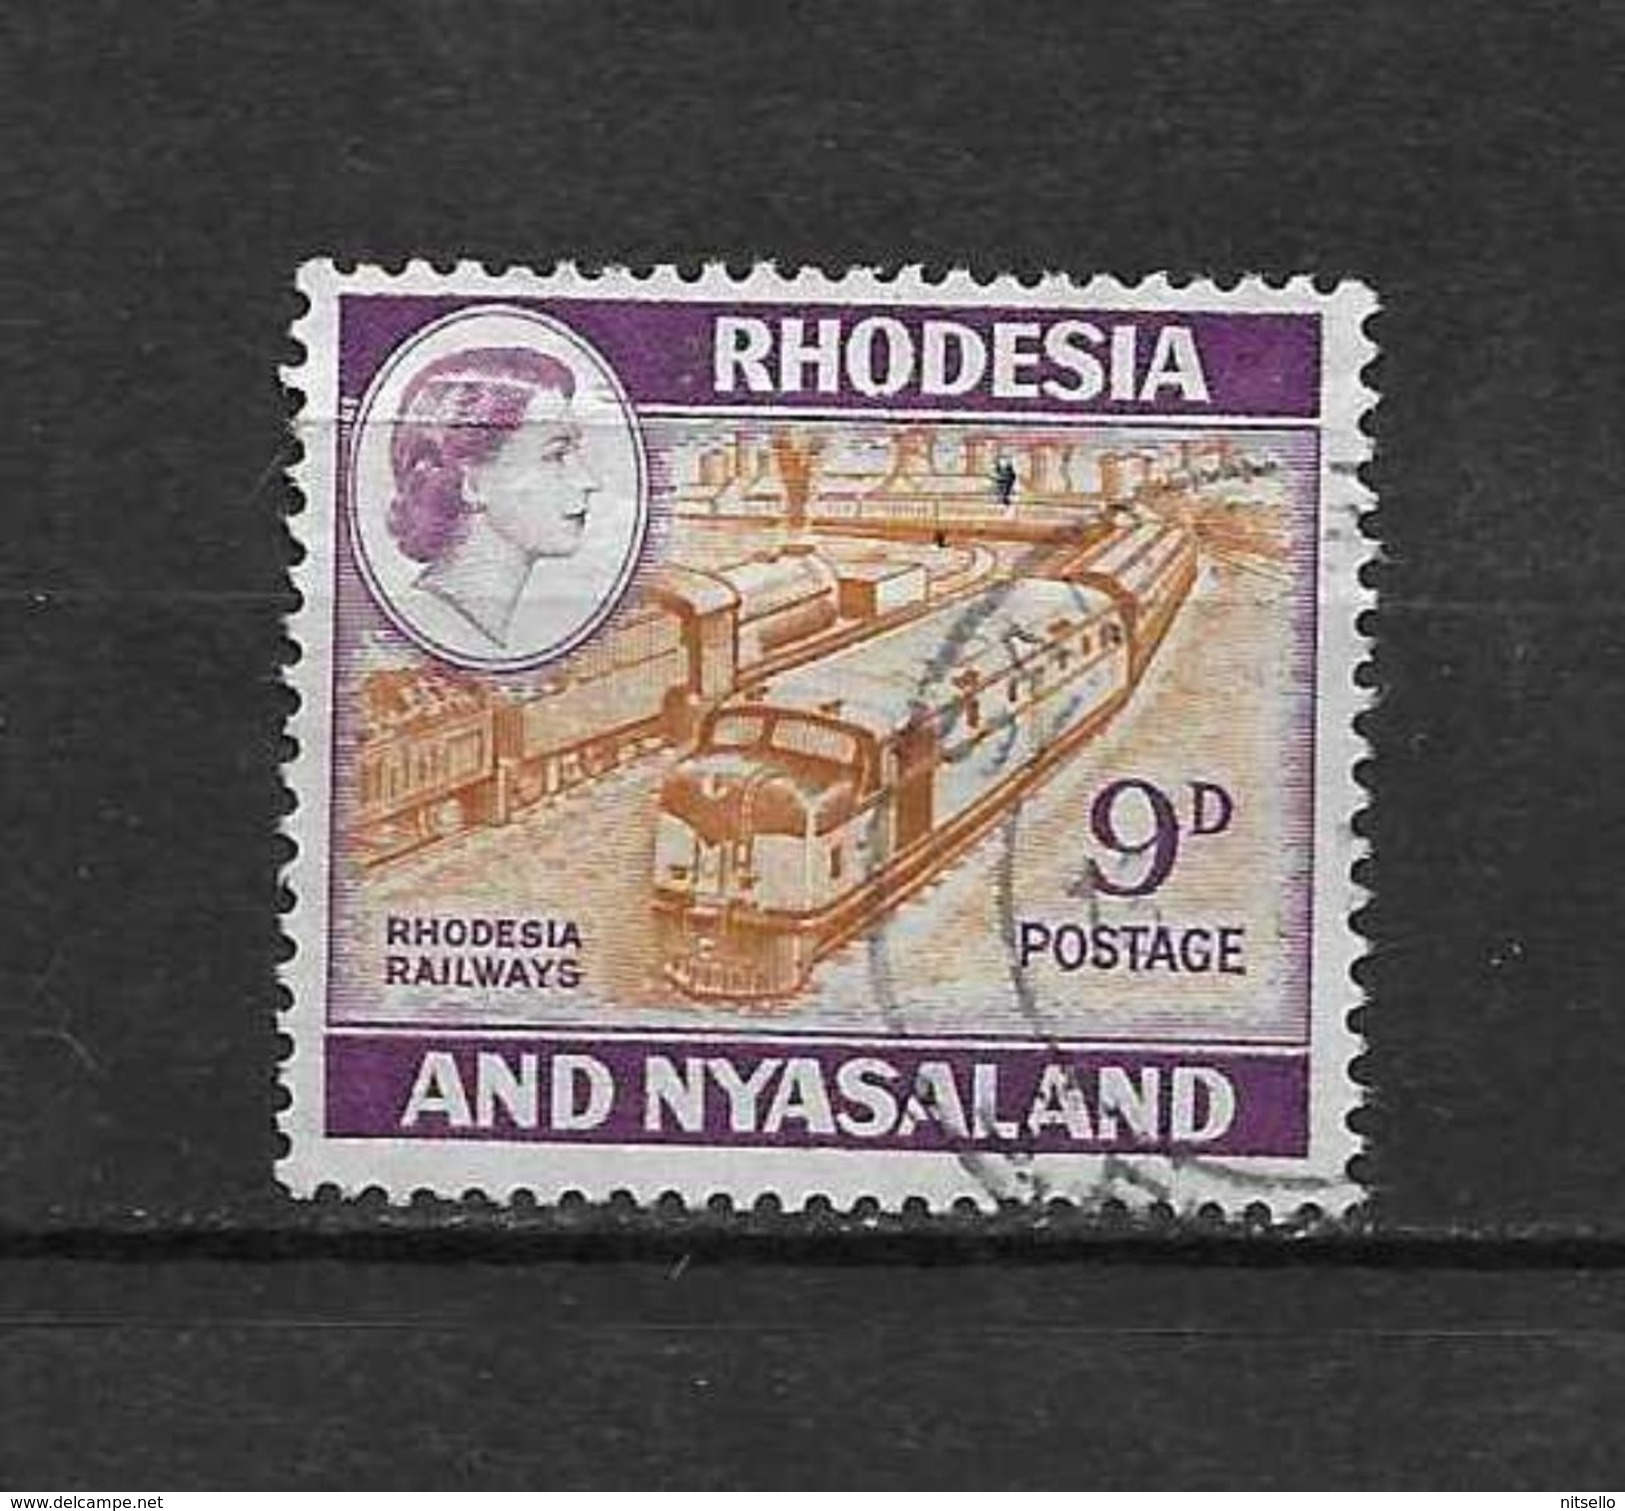 LOTE 2219A  ///   (C002)  RODESIA & NYASALAND          ¡¡¡¡¡ LIQUIDATION!!!!! - Rhodesië & Nyasaland (1954-1963)